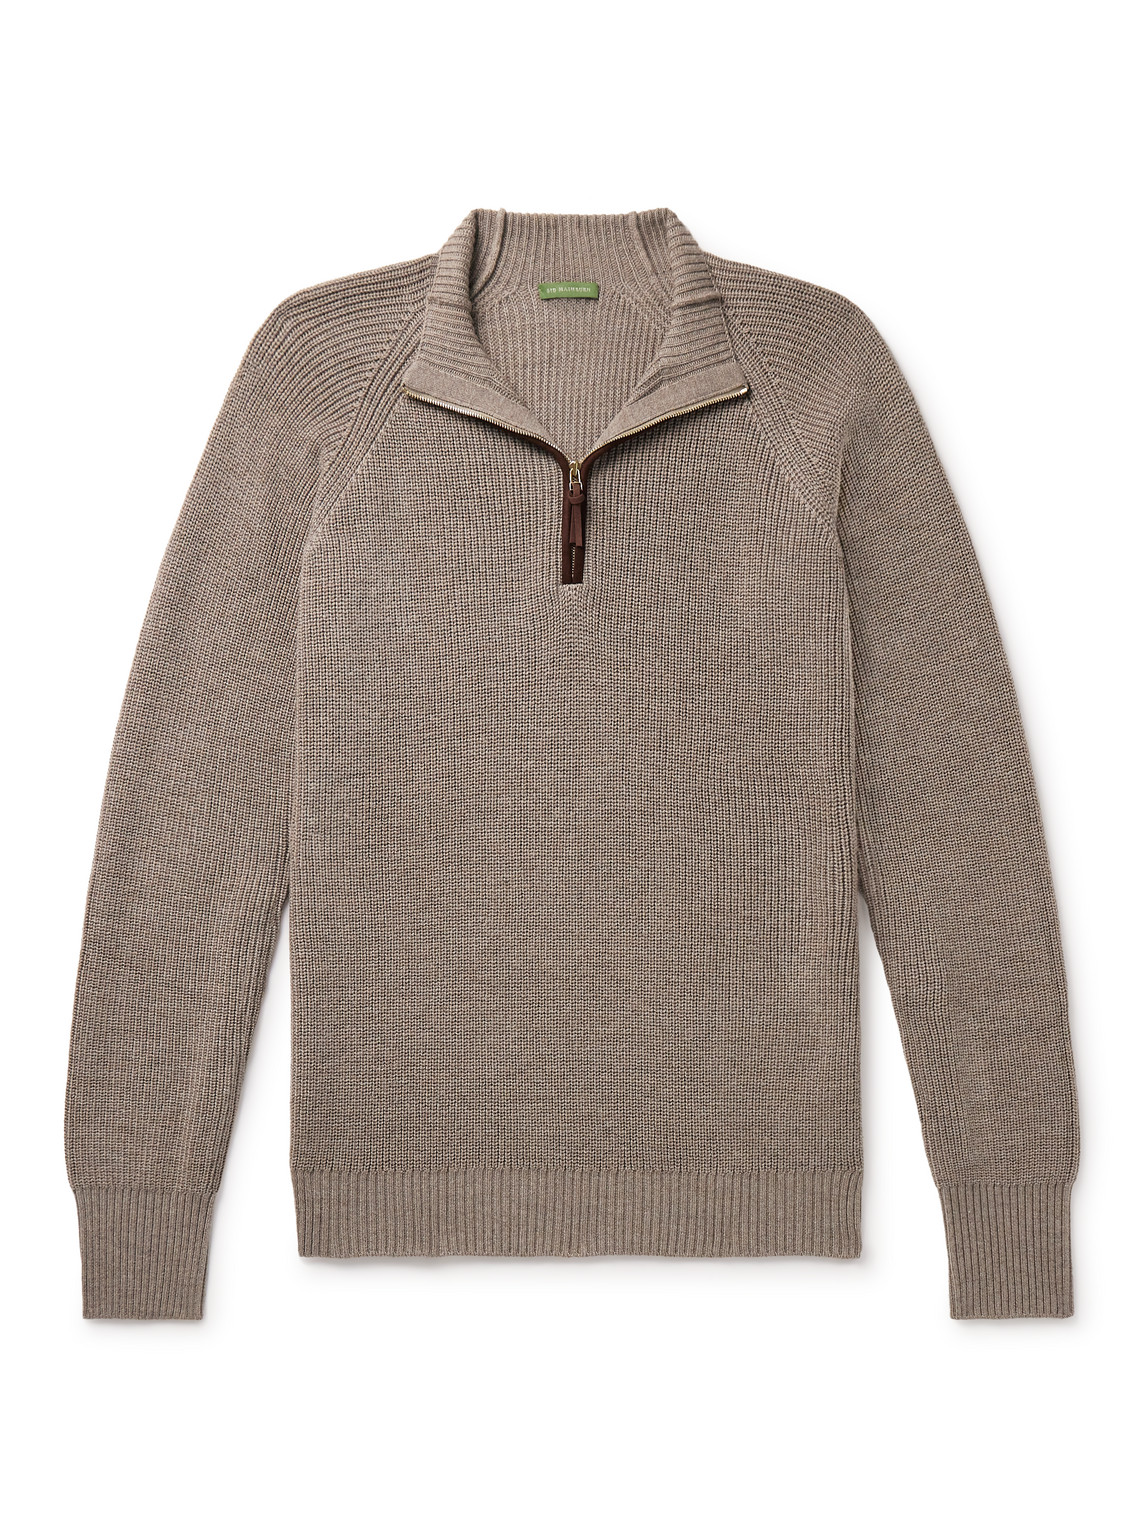 Slim-Fit Suede-Trimmed Merino Wool Half-Zip Sweater